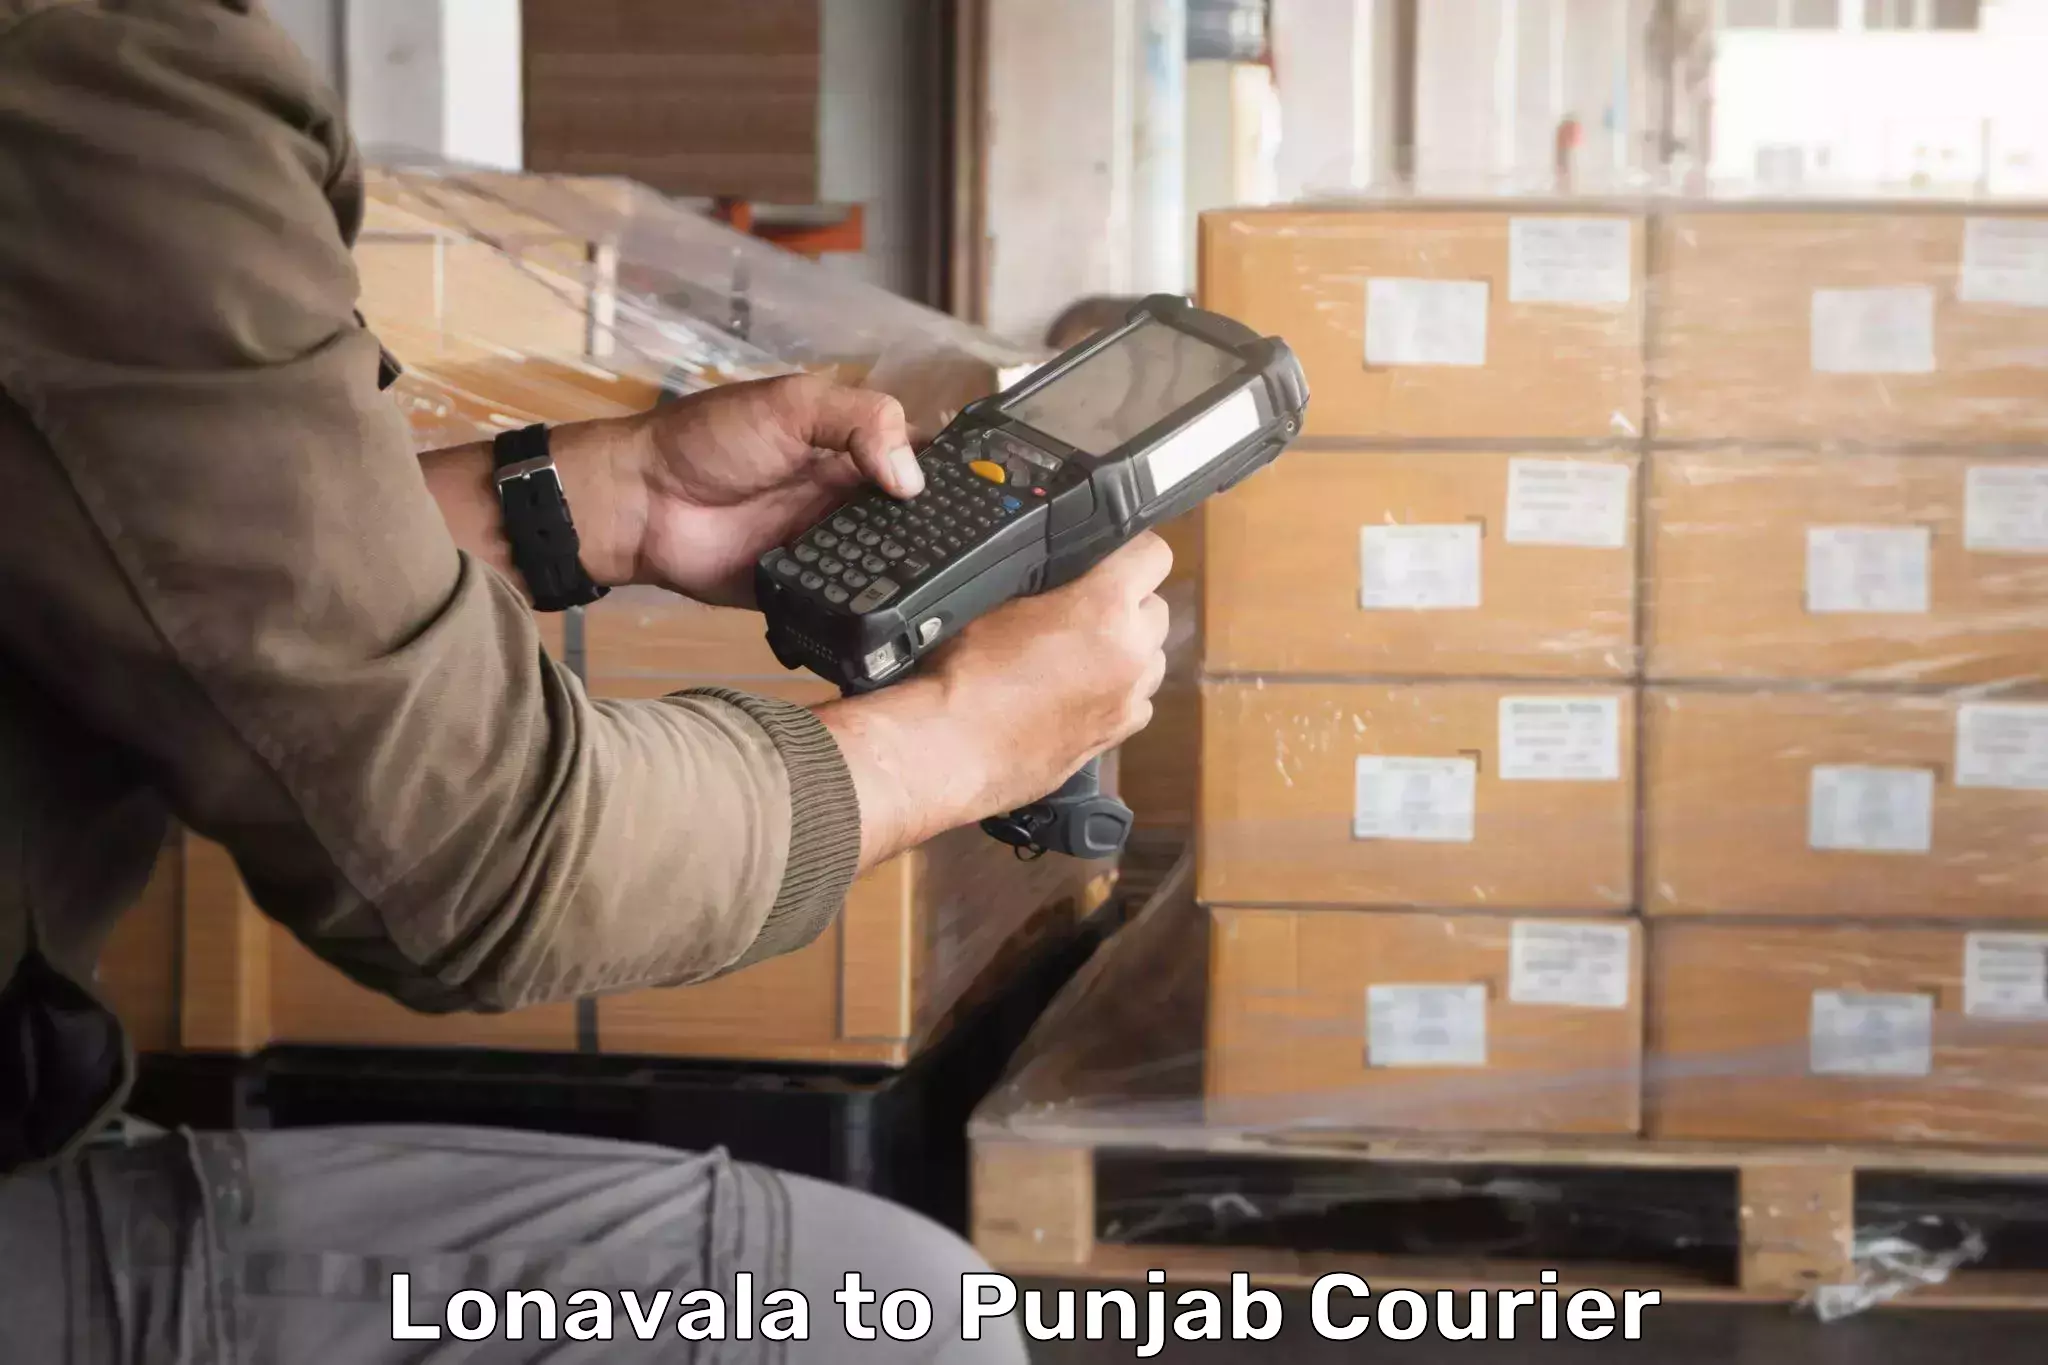 Secure packaging in Lonavala to Abohar